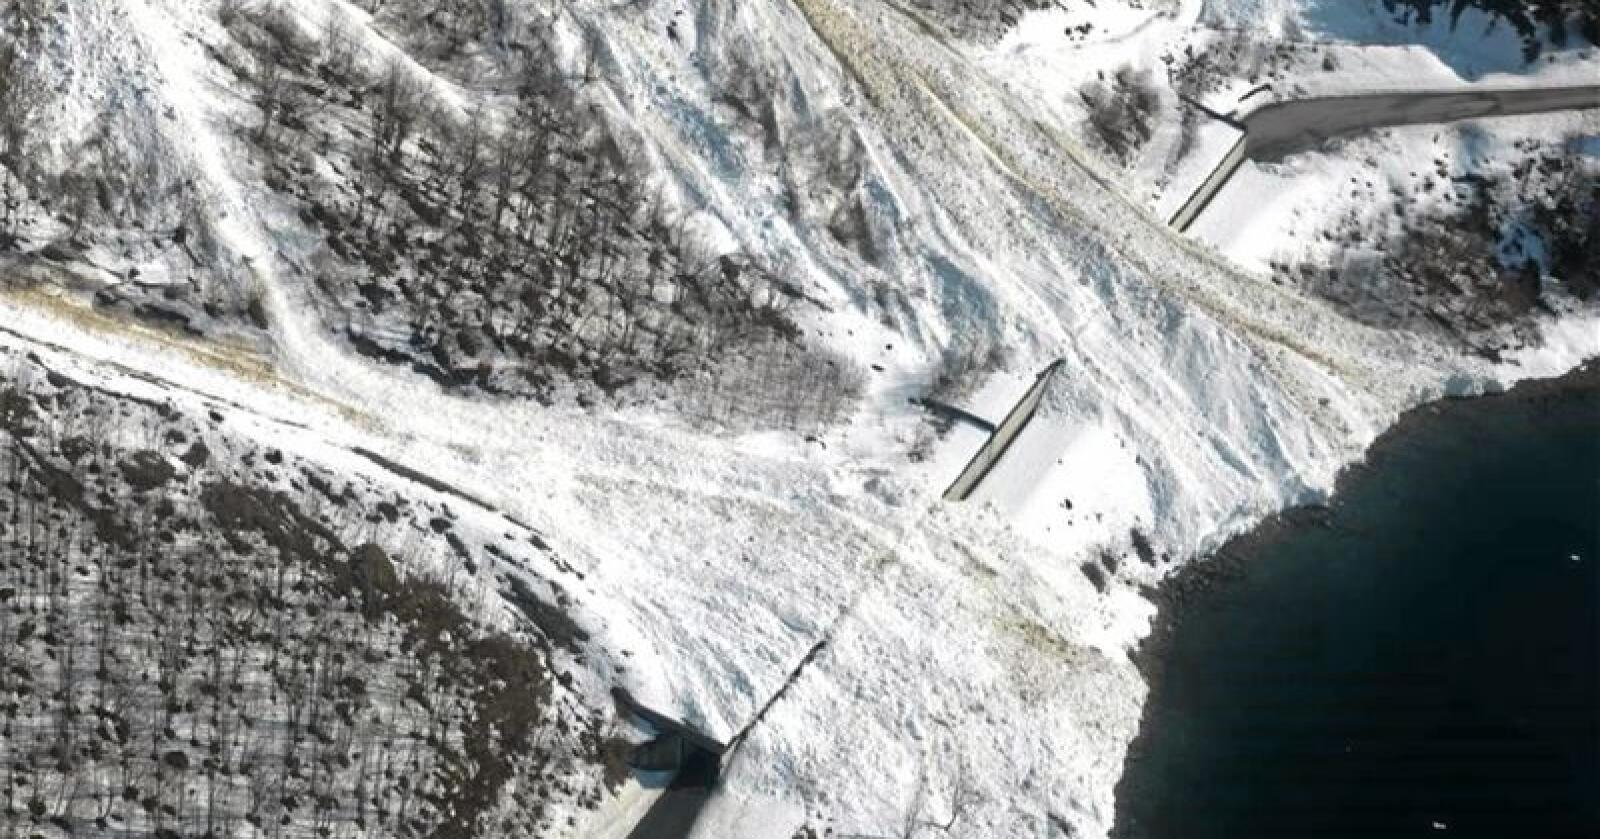 Hundrevis hvert år:  I snitt er det årlig rundt 200 snøskred på norske veier. Noen steder er det snøras på samme sted nesten hver vinter - som her i Norangsdalen i Møre og Romsdal. Her er det satt opp skredoverbygg og fangvoll som sikrer fylkesvei 655 gjennom Norangsdalen. Foto: Arild Solberg